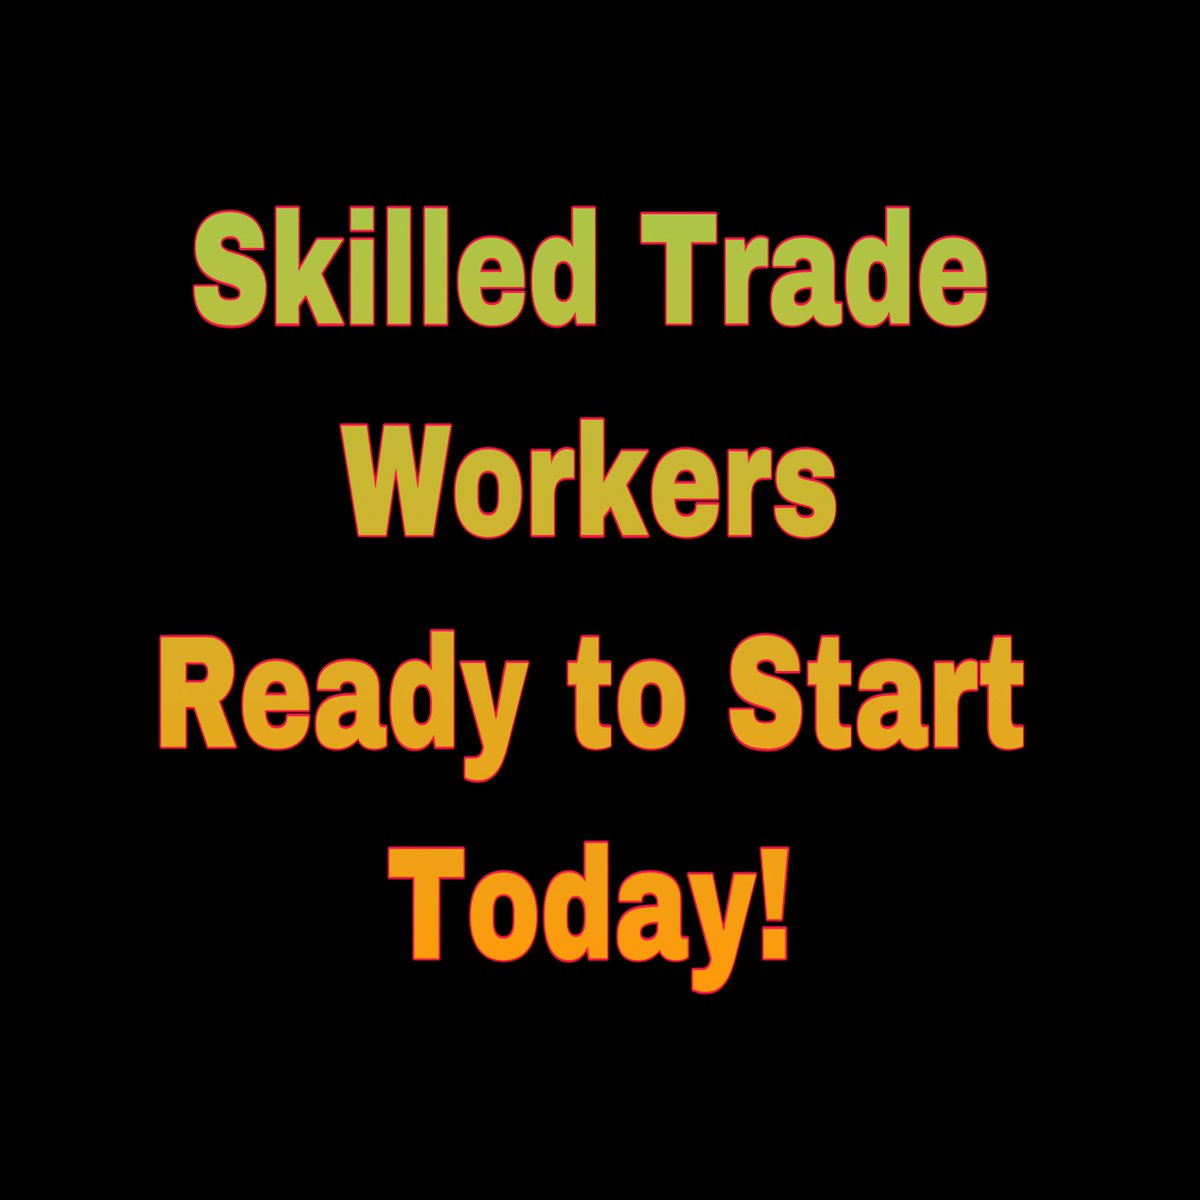 #skiledtradestaffing #jobs #construction @traderecruiting #skilledtradejobs